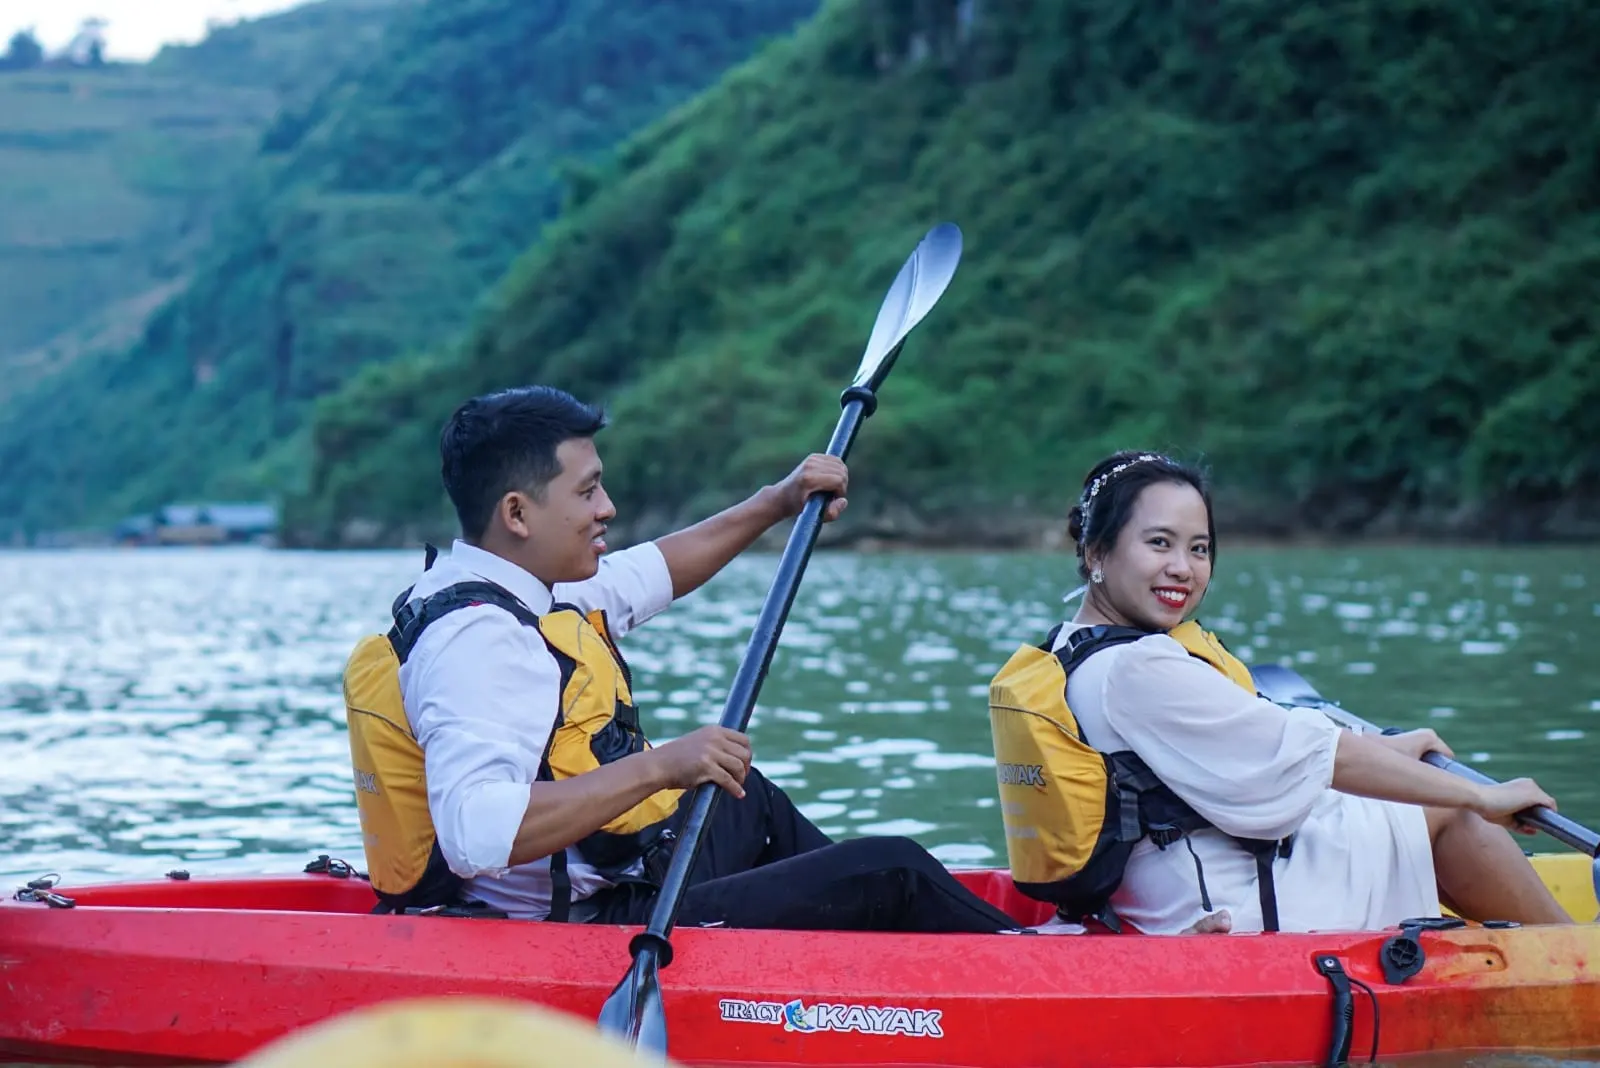 man and woman riding red kayak on lake